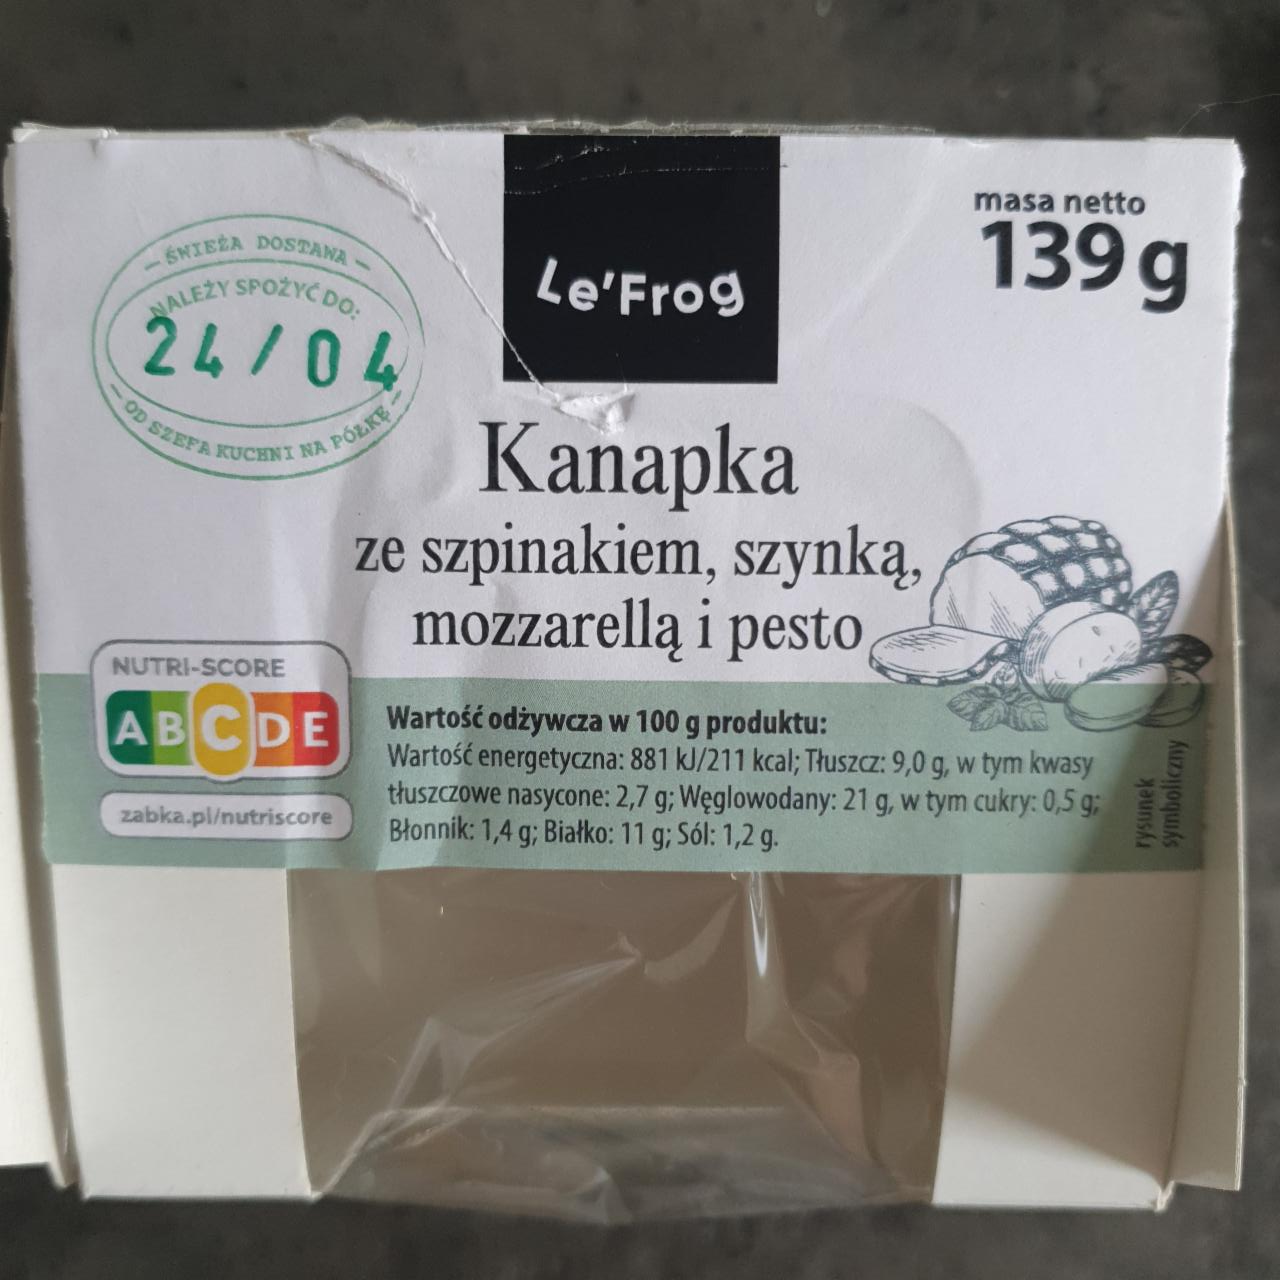 Zdjęcia - Kanapka ze szpinakiem szynką mozzarellą i pesto Le'frog